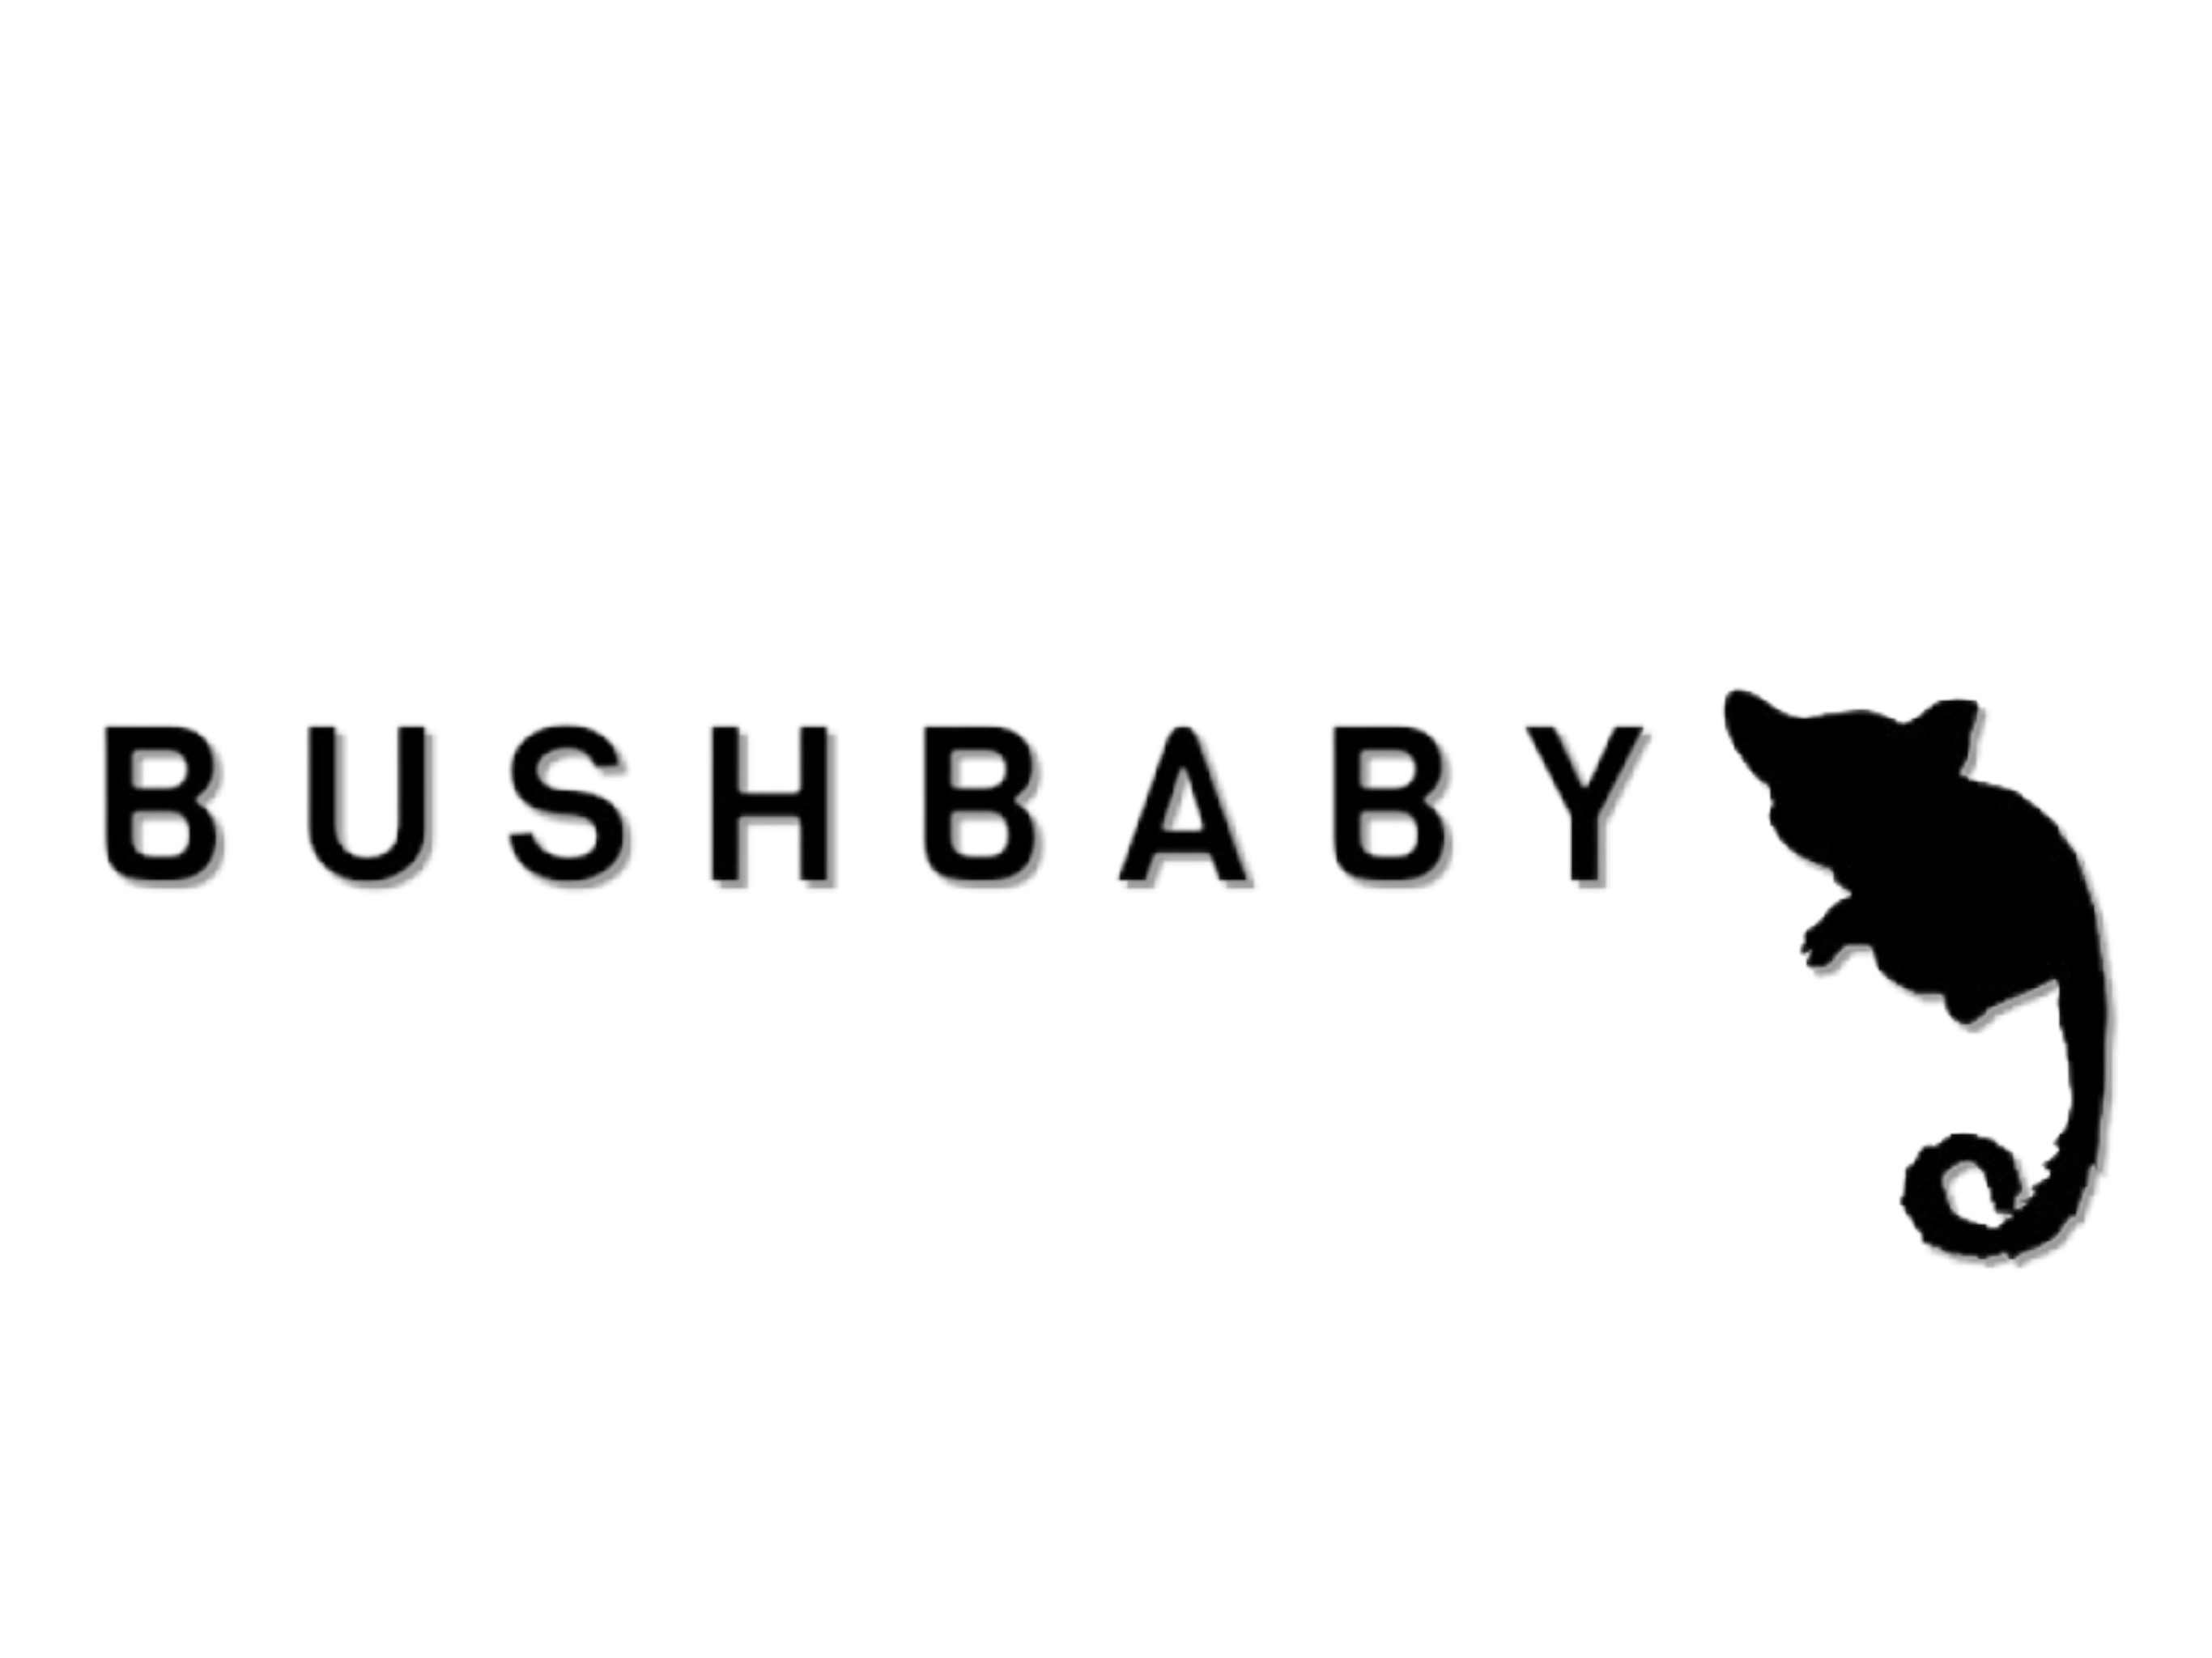 BUSHBABY